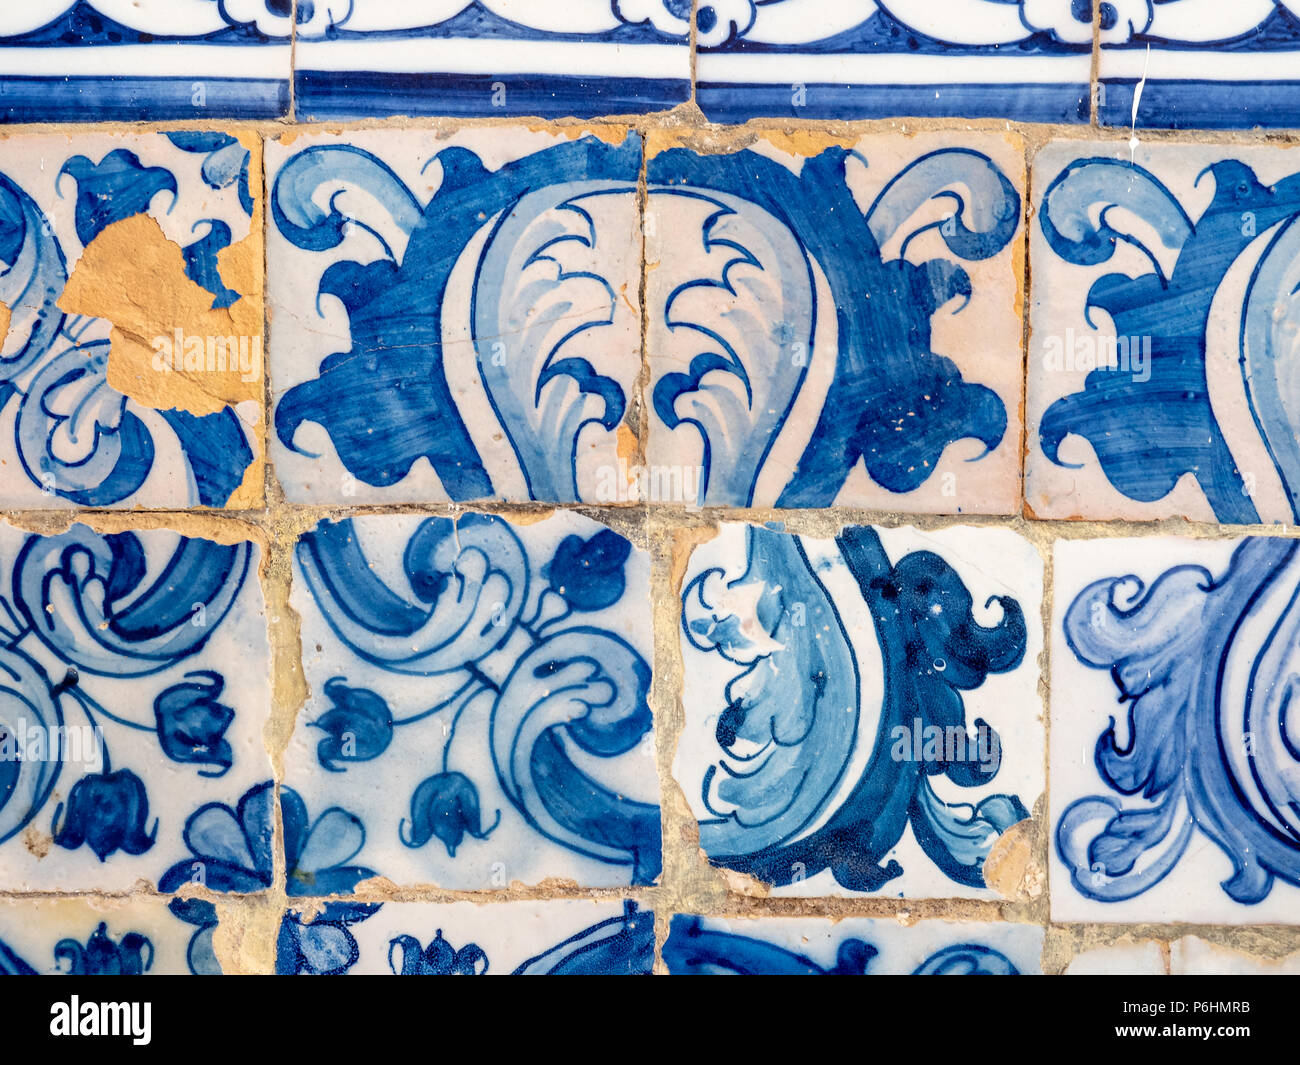 Azulejos in the chapel 'Igreja de Nossa Senhora da Rocha', Algarve, Portugal Stock Photo